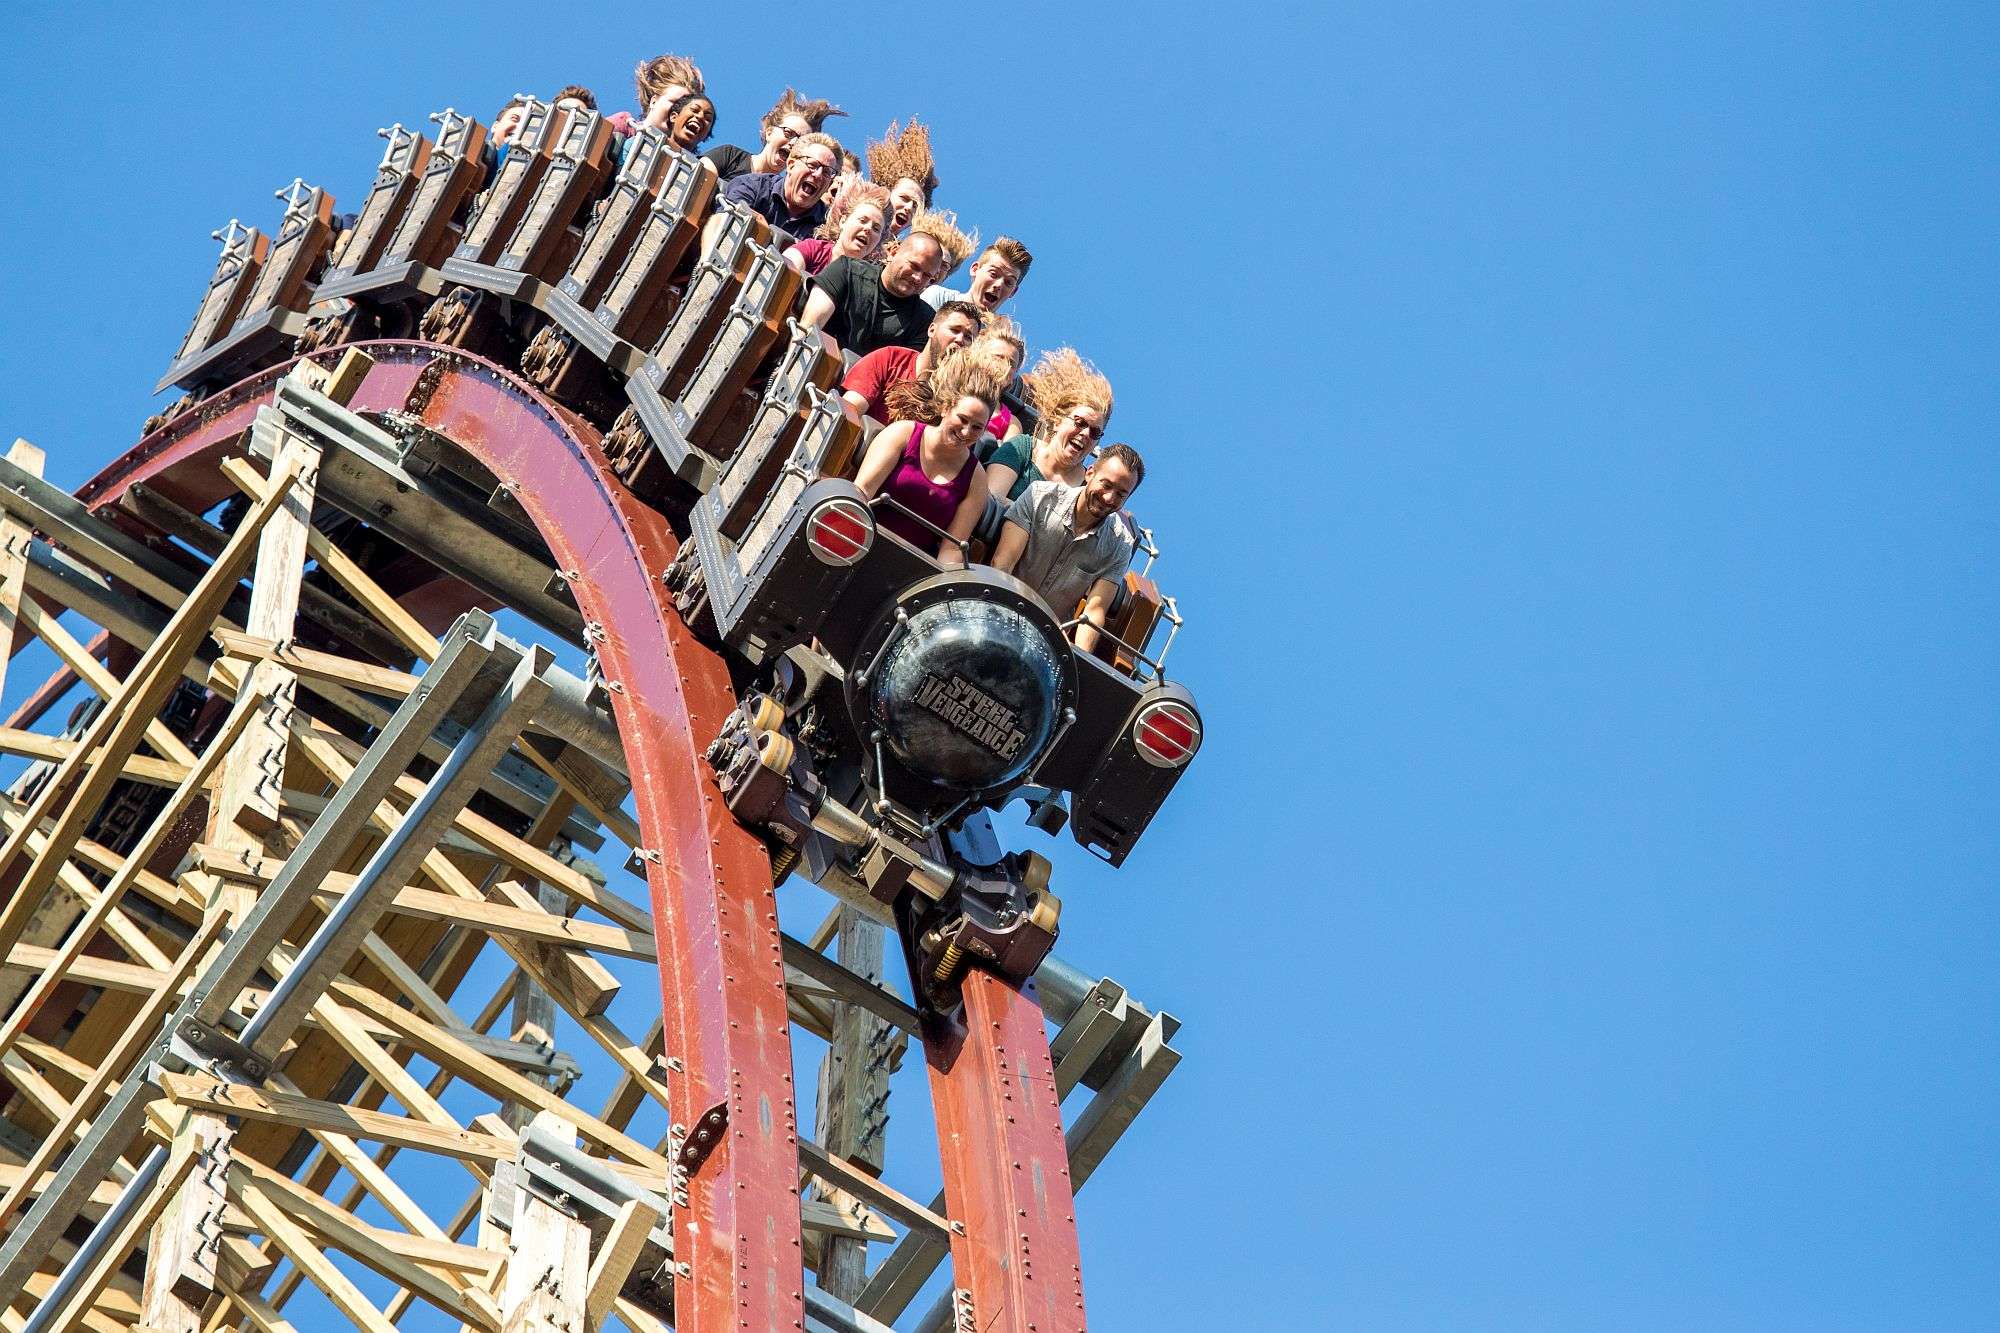 Cedar Point's Steel Vengeance coaster approaching a hill descent